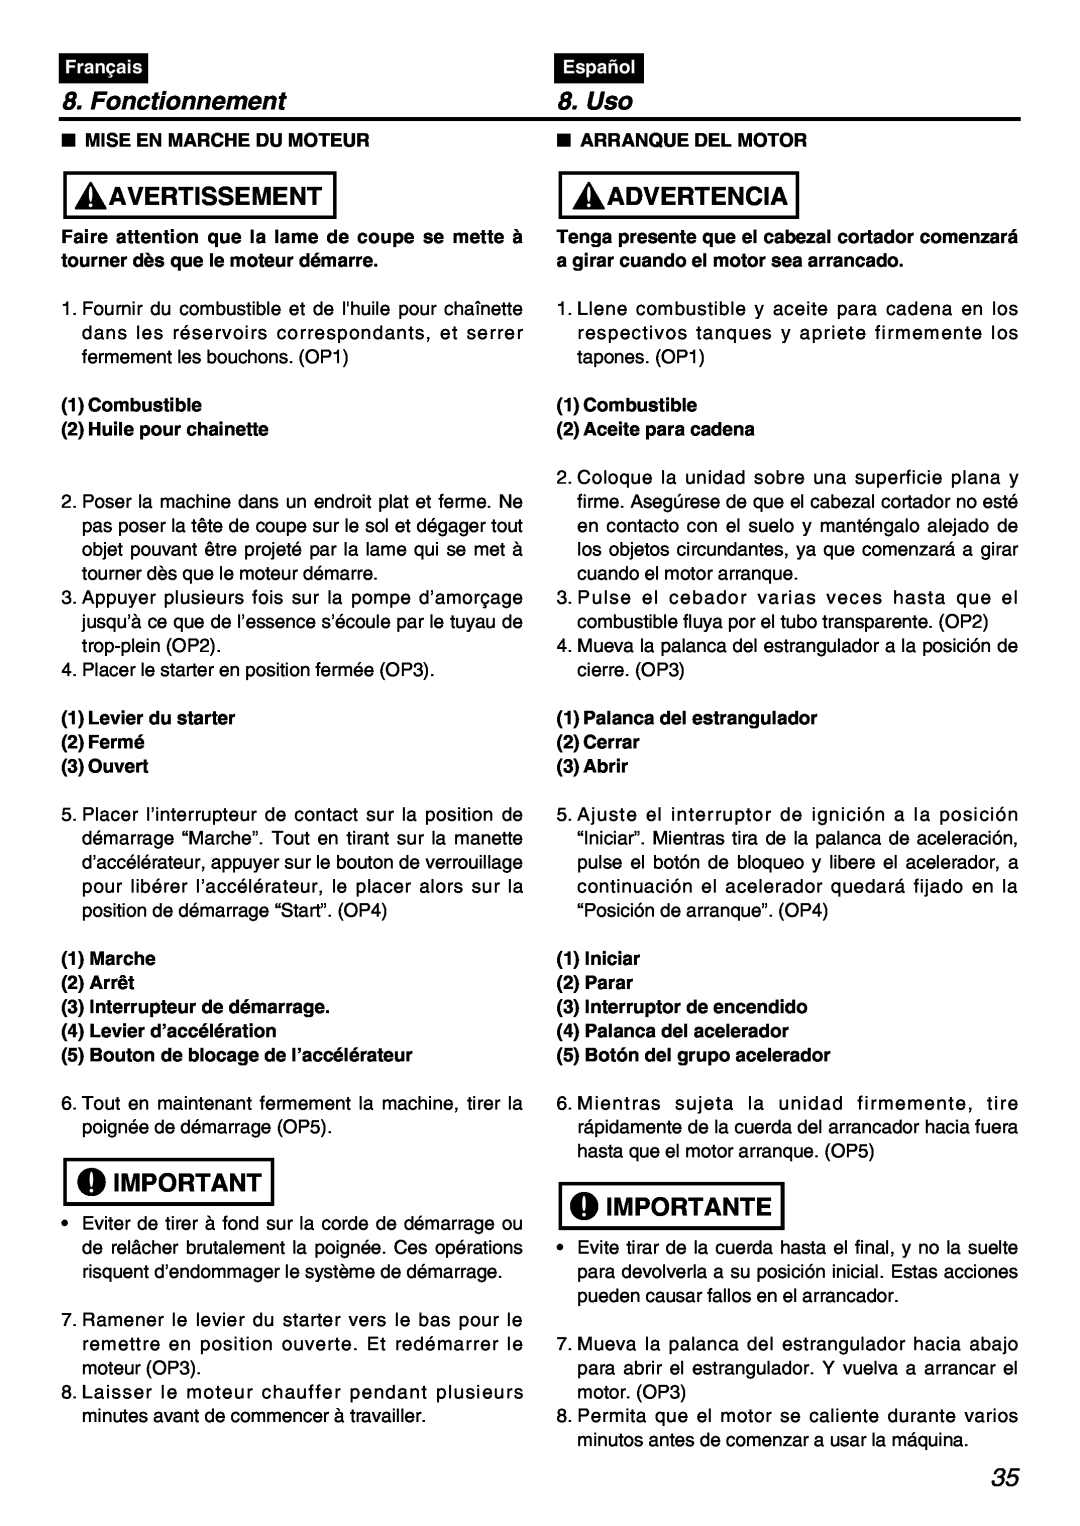 Zenoah PSZ2401 Fonctionnement, Uso, Mise En Marche Du Moteur, Arranque Del Motor, Avertissement, Advertencia, Importante 